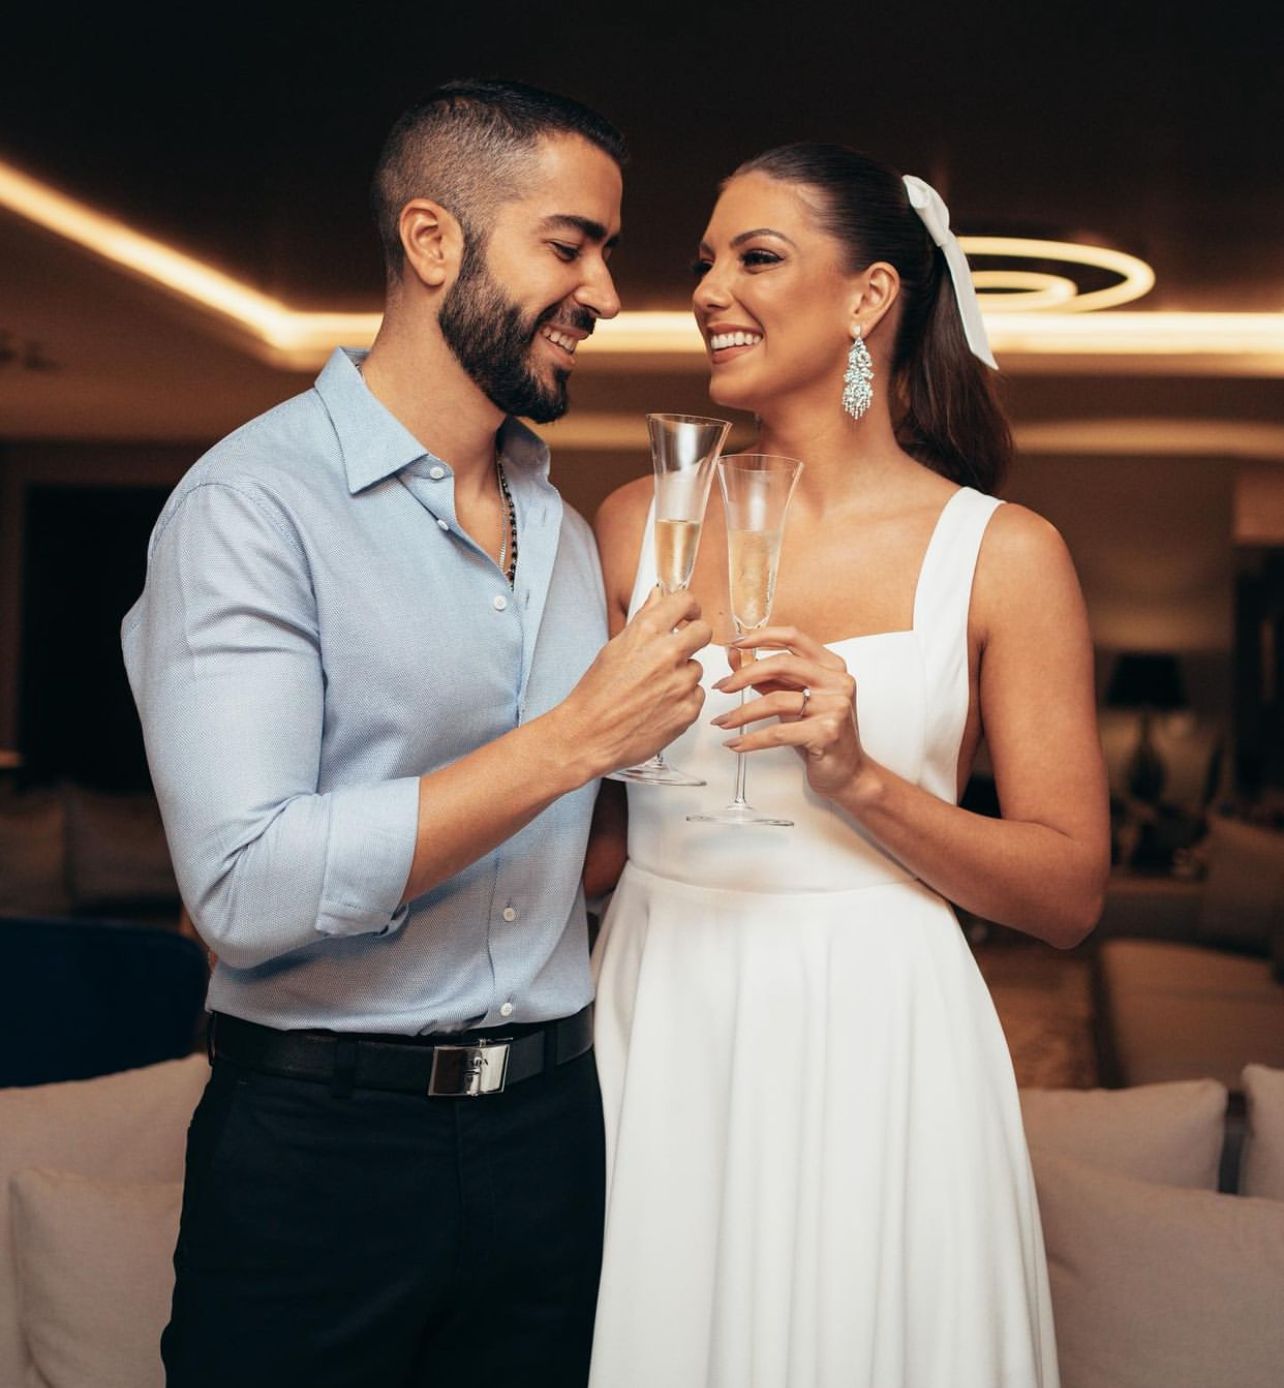 Rafa Marques e Pati Guerra oficializam noivado durante jantar intimista em Salvador; veja fotos 